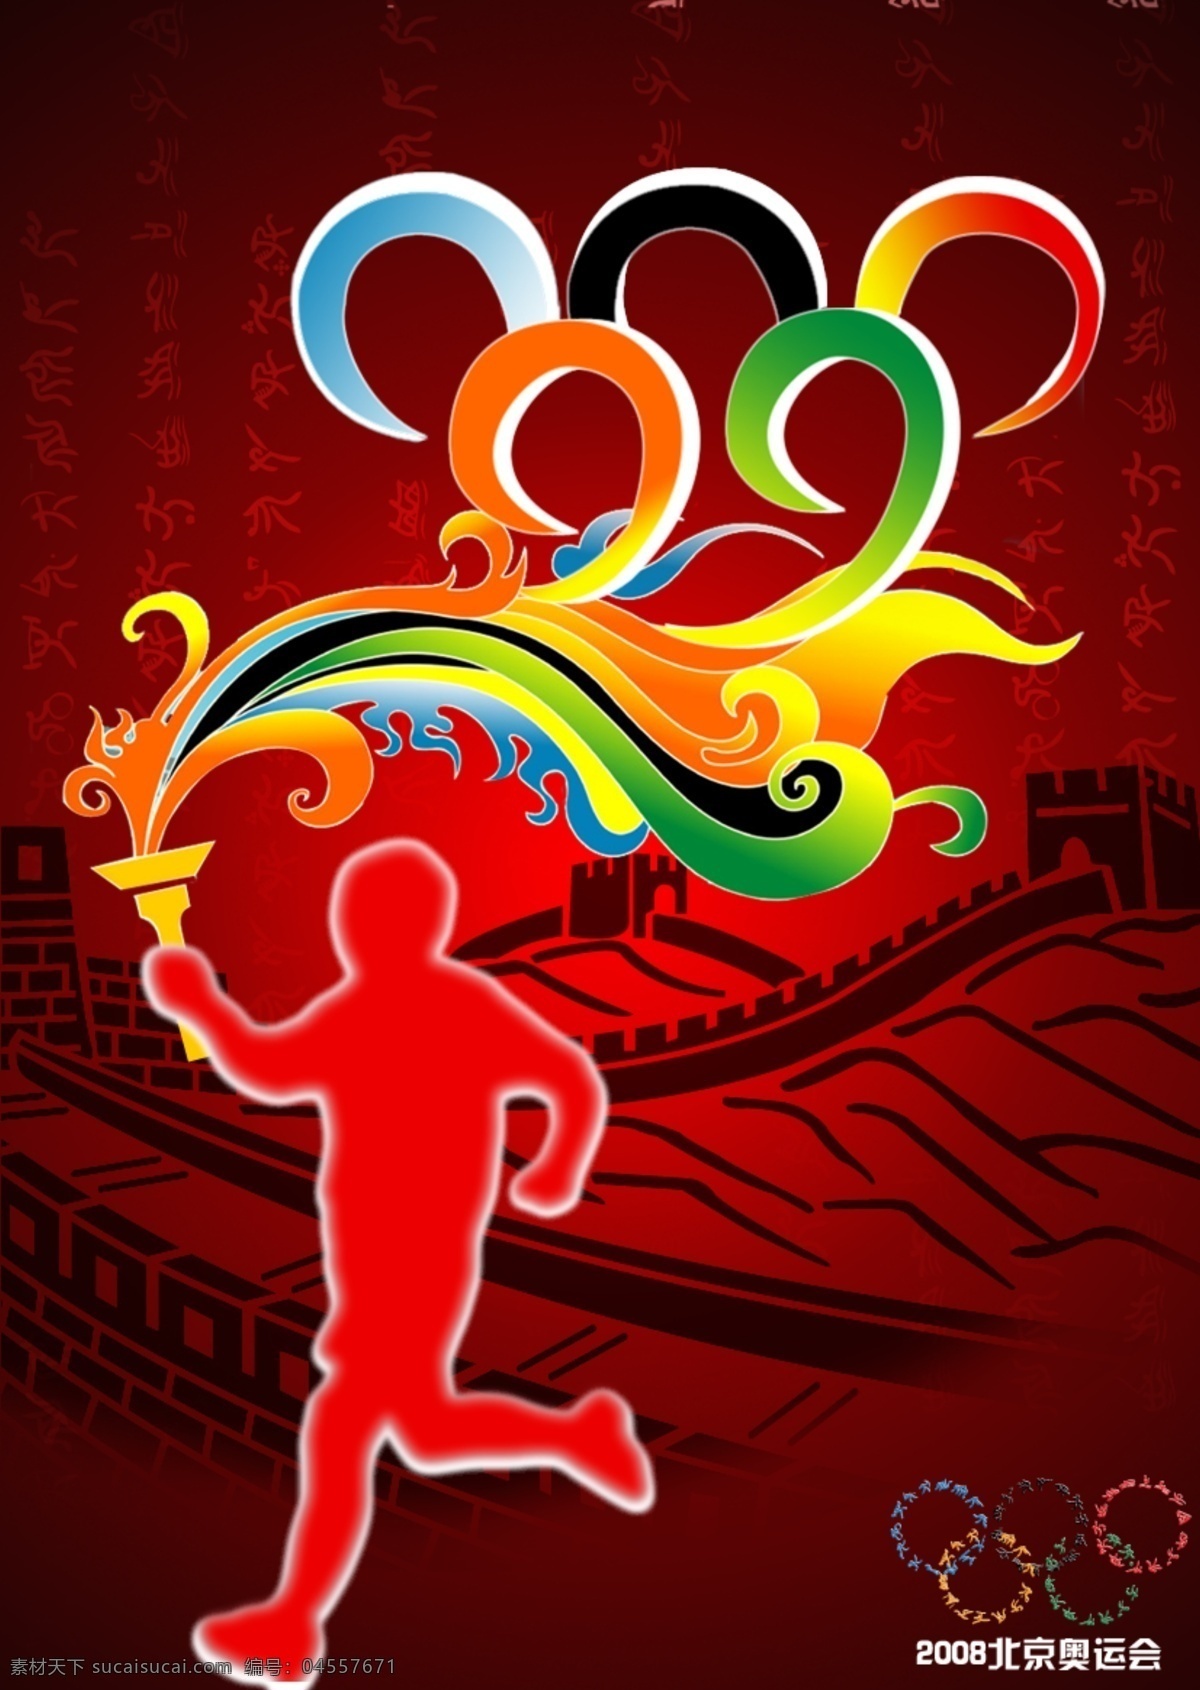 2008 北京 奥运会 海报 奥运 火炬传递 祥云 长城 运动项目 五环 红色 广告设计模板 国内广告设计 源文件库 psd素材 分层